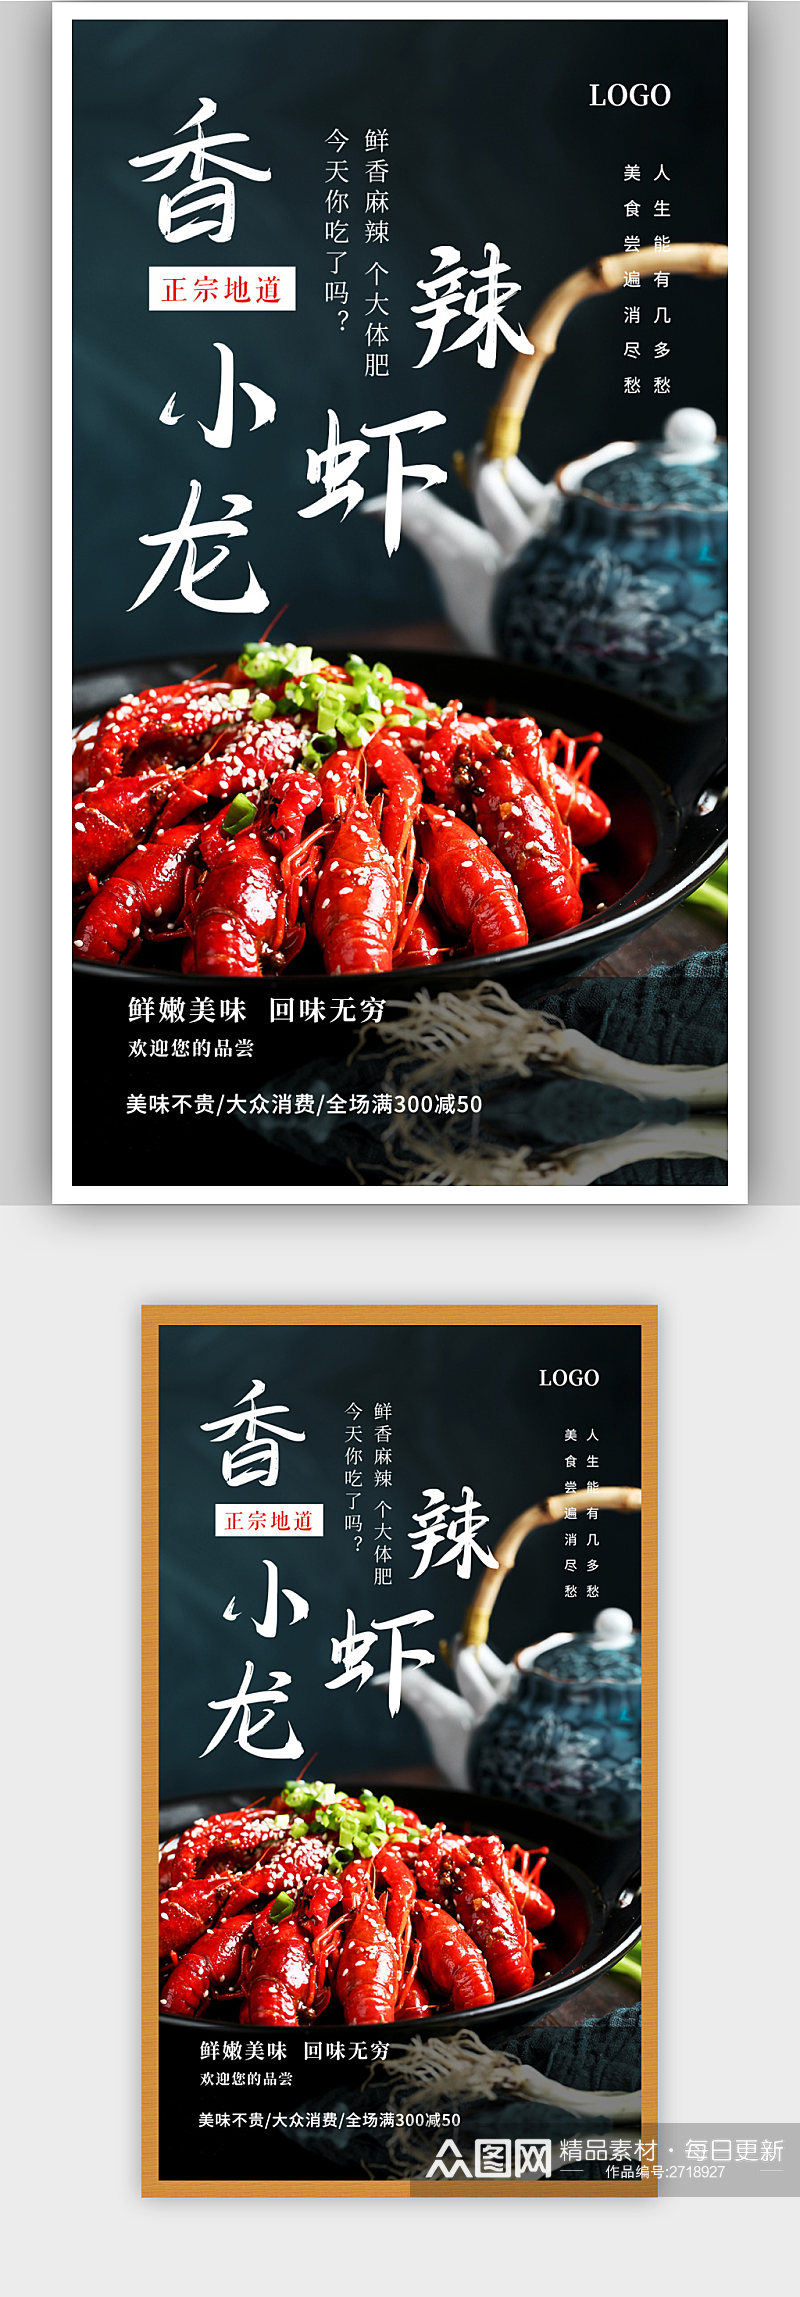 香辣小龙虾美食宣传促销海报素材